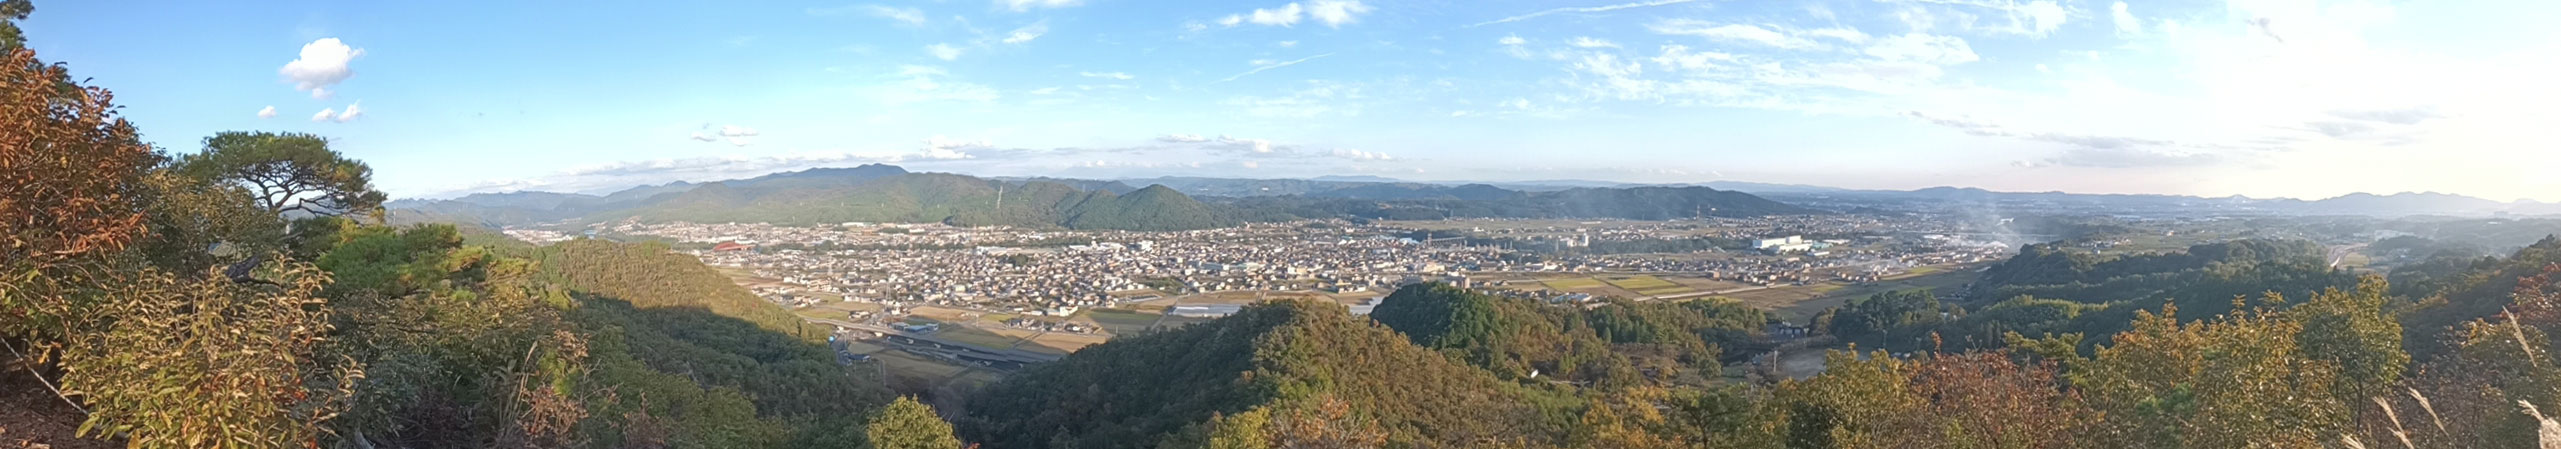 鬼飛山・第二見晴らし台からのパノラマ